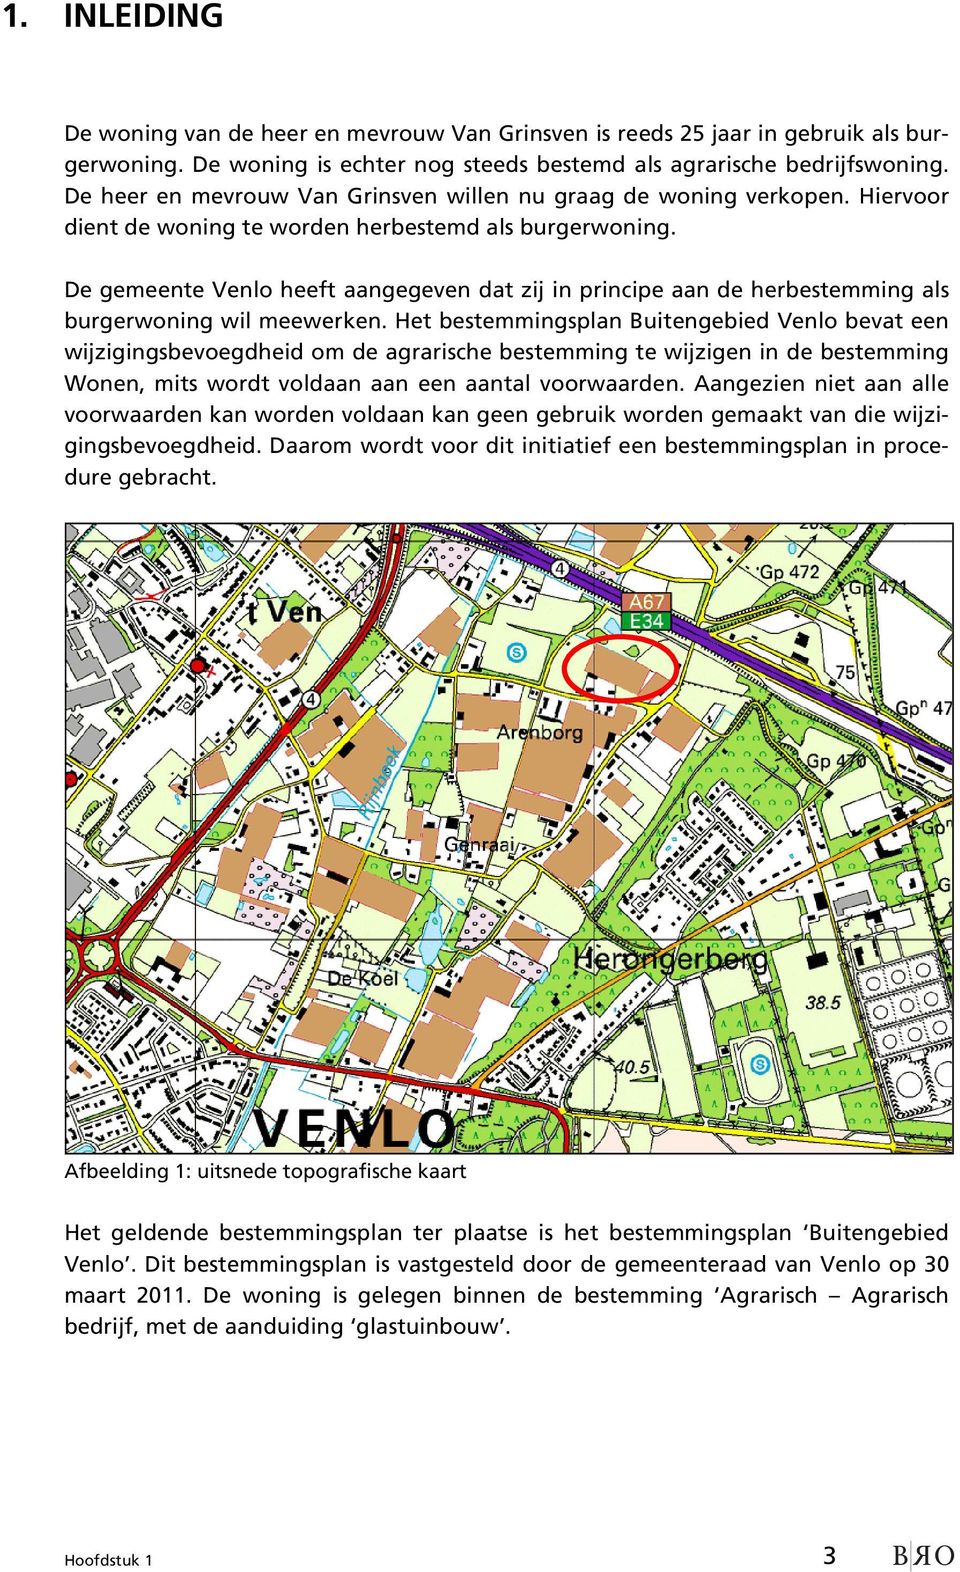 De gemeente Venlo heeft aangegeven dat zij in principe aan de herbestemming als burgerwoning wil meewerken.